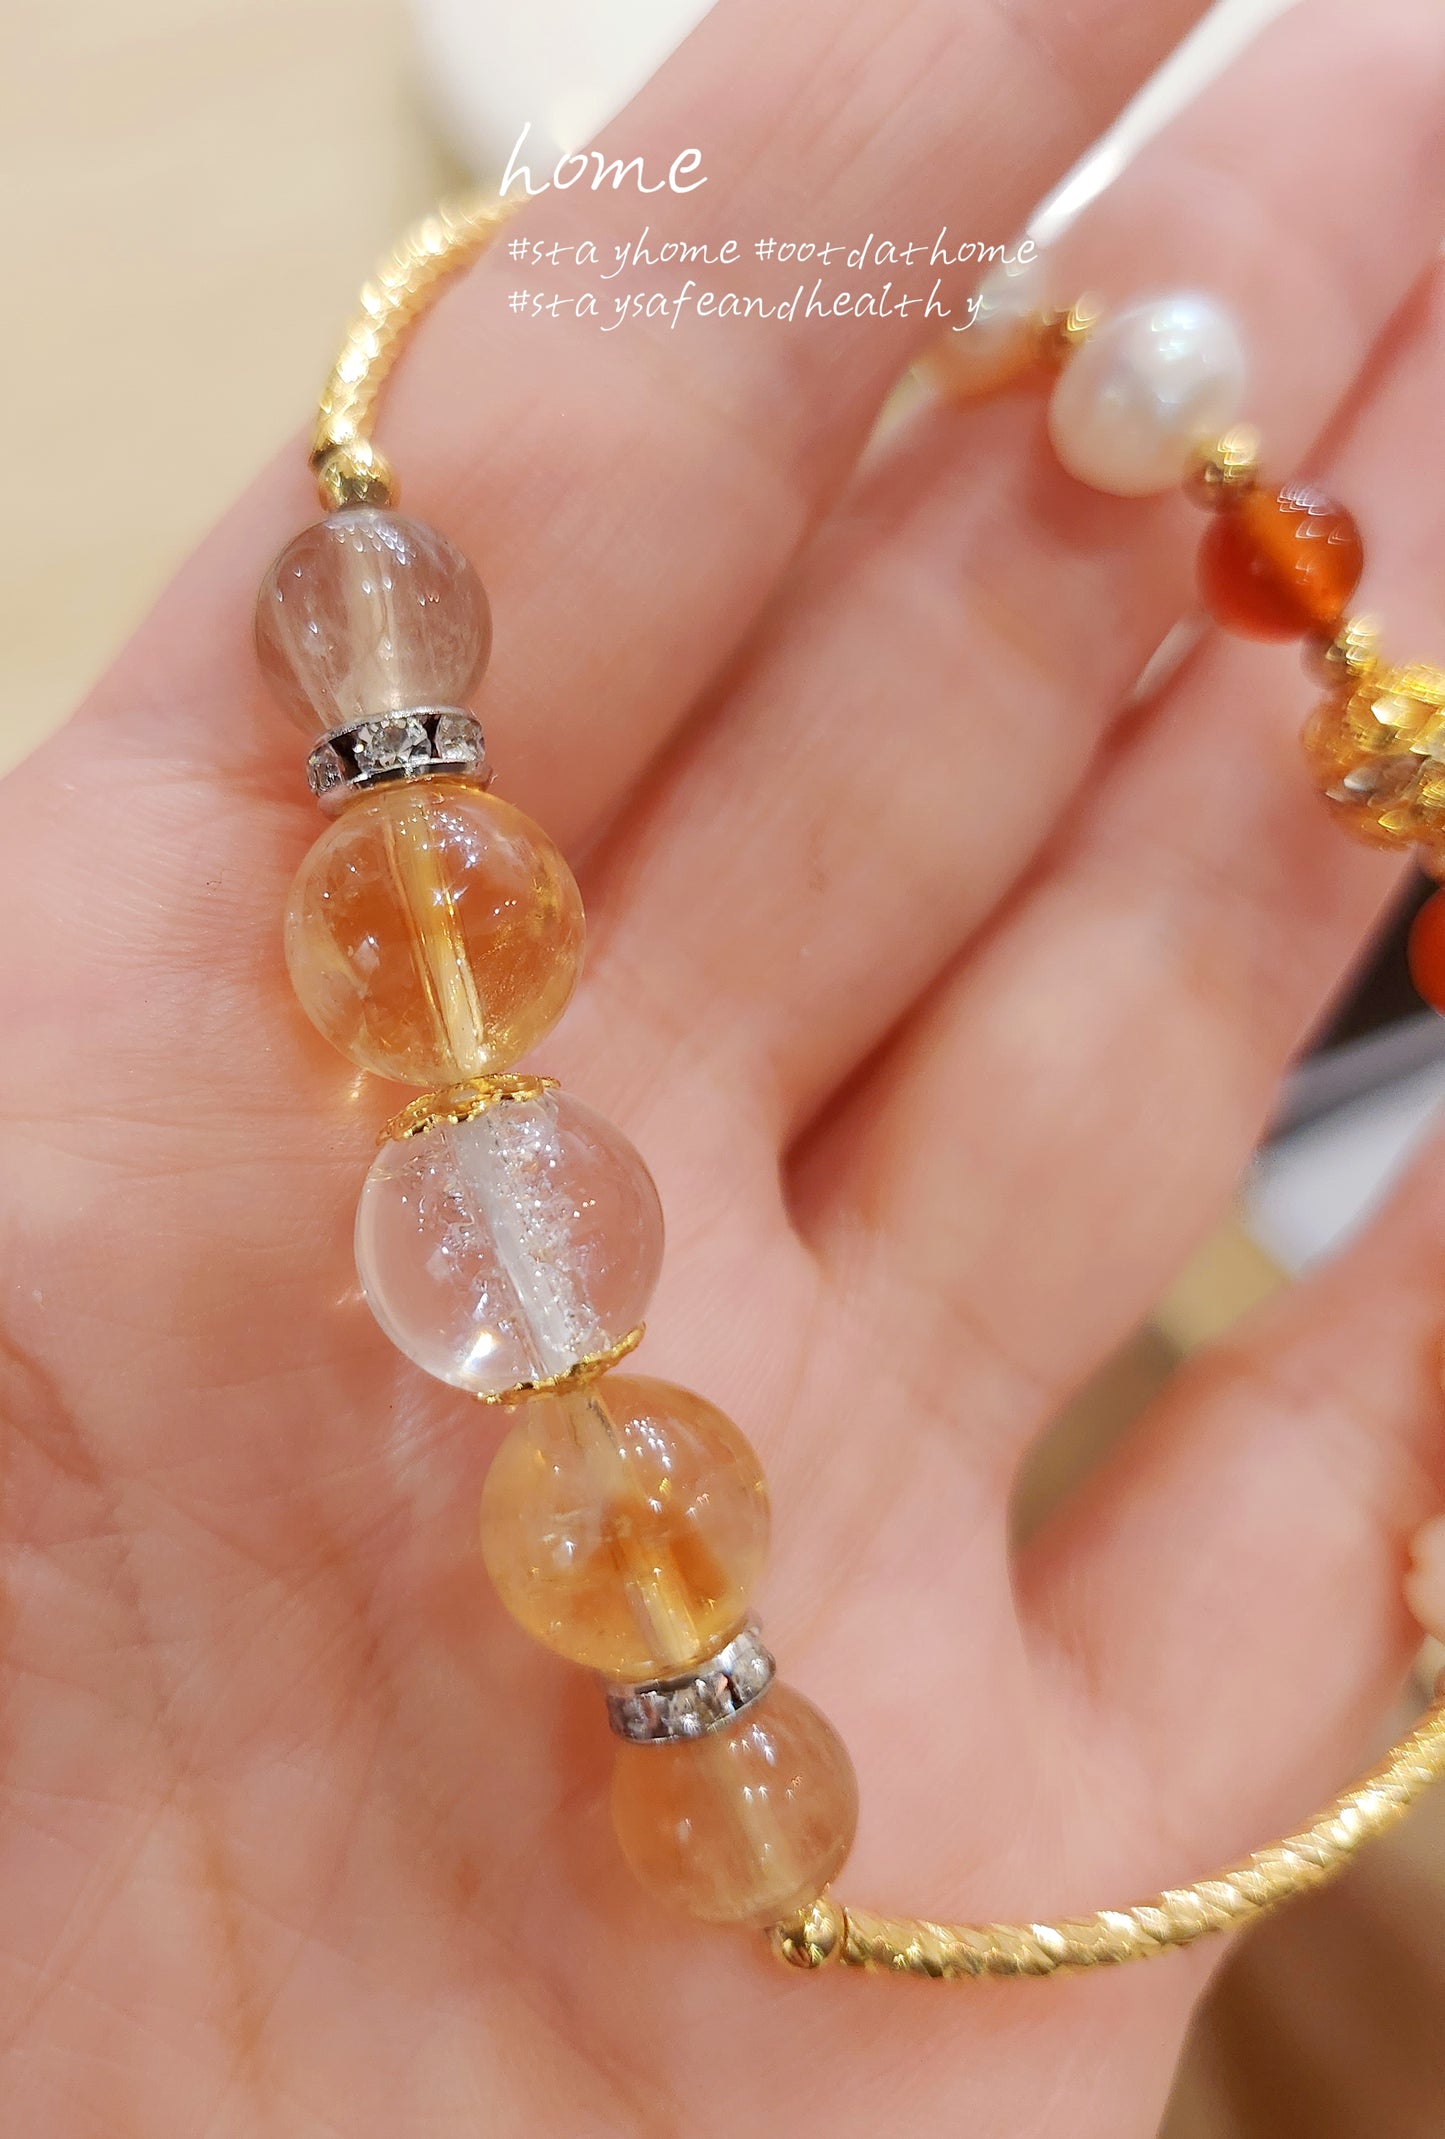 Natural Stone&Freshwater Pearls Handmade Bracelet